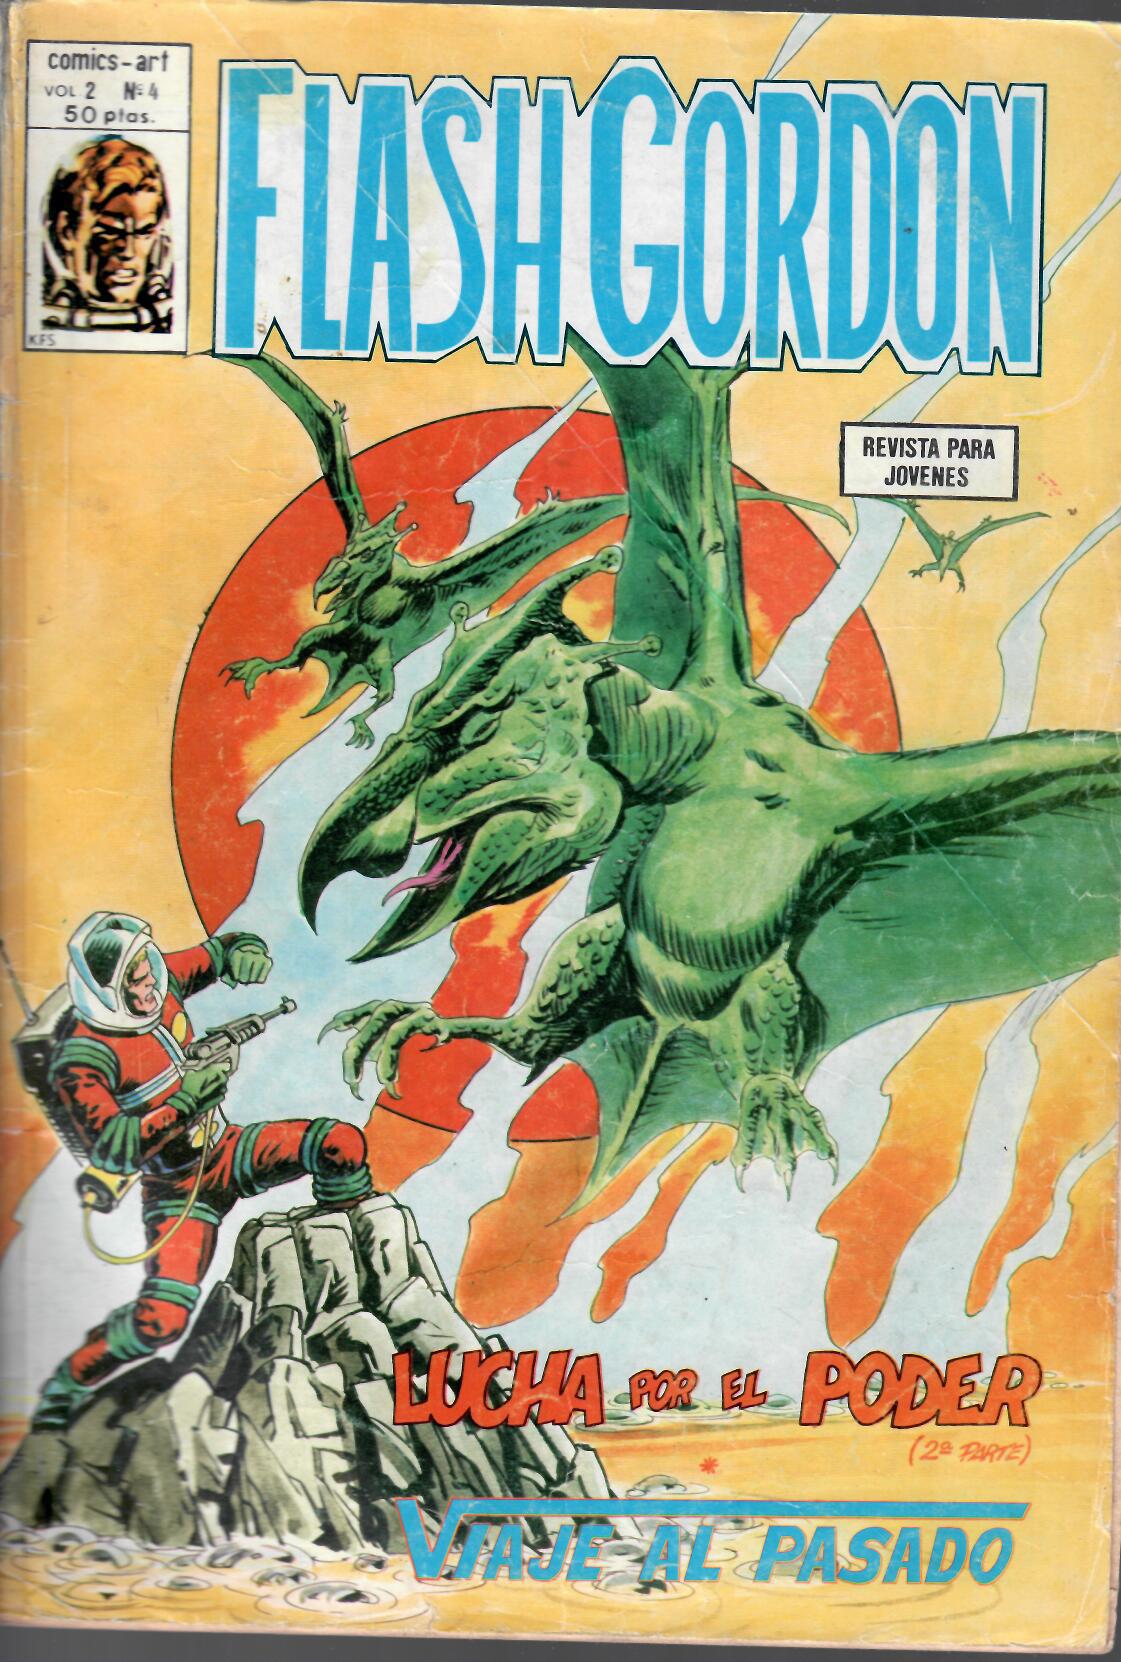 Flash Gordon v2. Vértice 1980. Nº 4